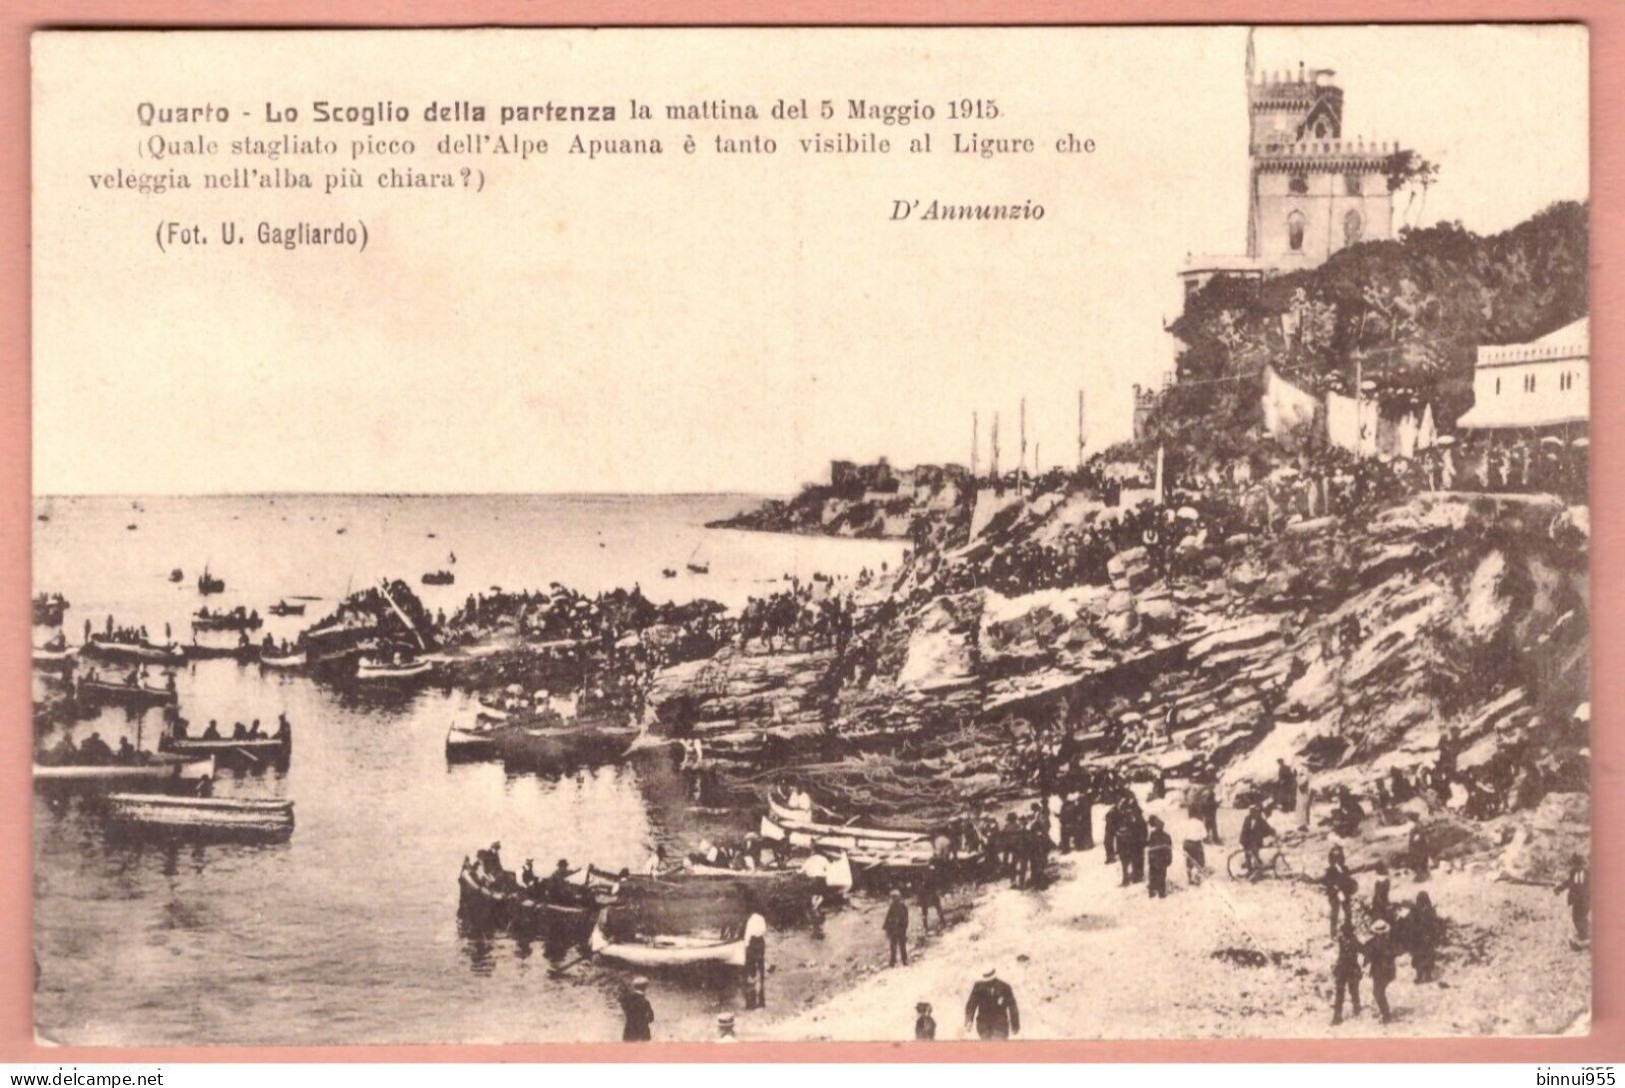 Cartolina Quarto Lo Scoglio Della Partenza Dei Mille (Garibaldi) - Non Viaggiata - Genova (Genoa)